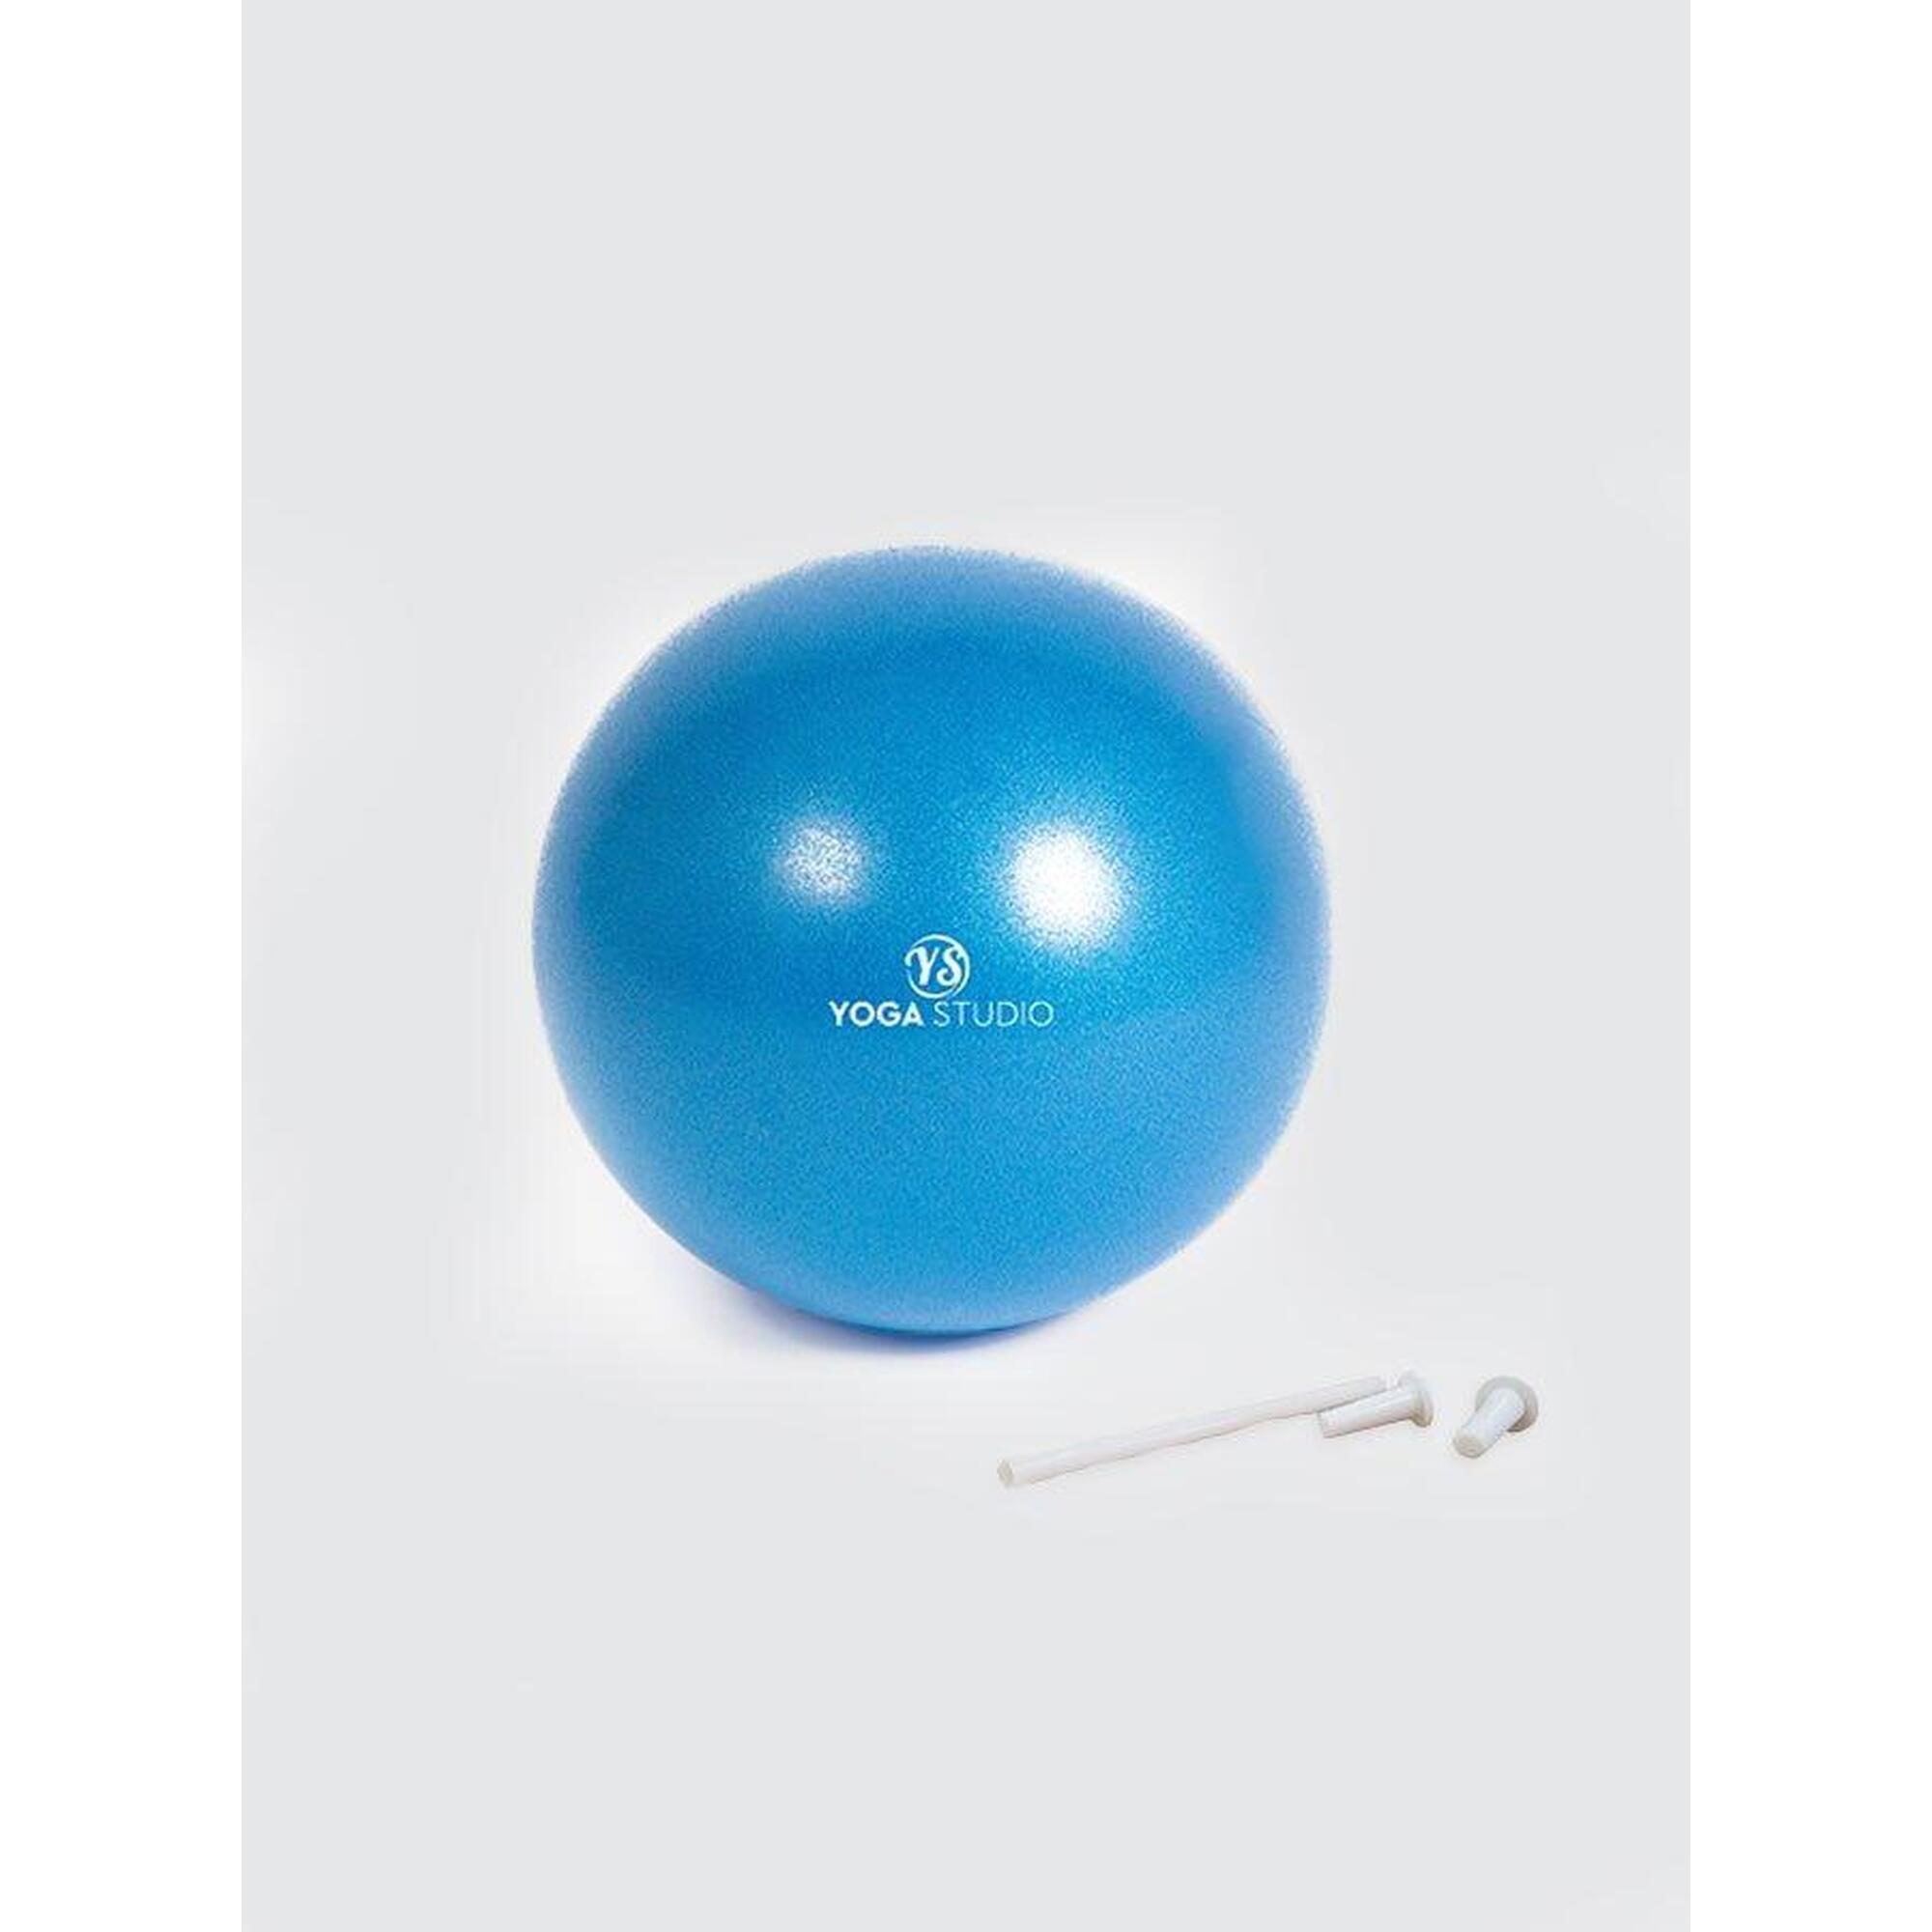 YOGA STUDIO Yoga Studio Exercise Soft Ball - 7 Inch